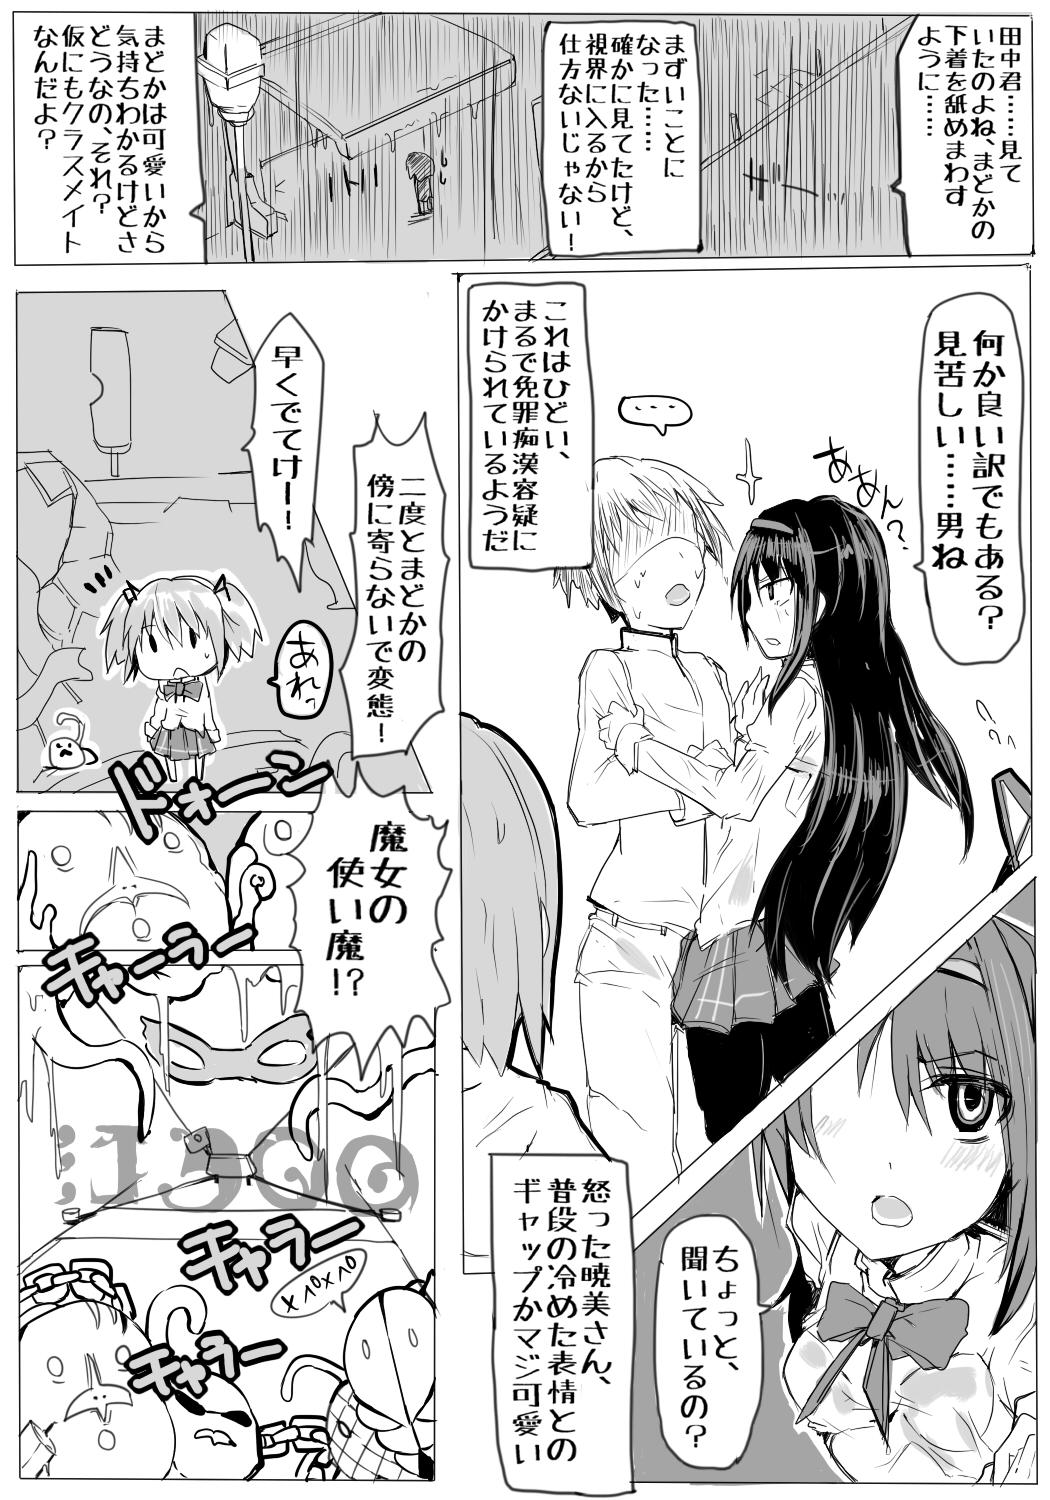 Real Orgasm 魔法少女まどか☆マギカと田中 - Puella magi madoka magica Slut - Page 3